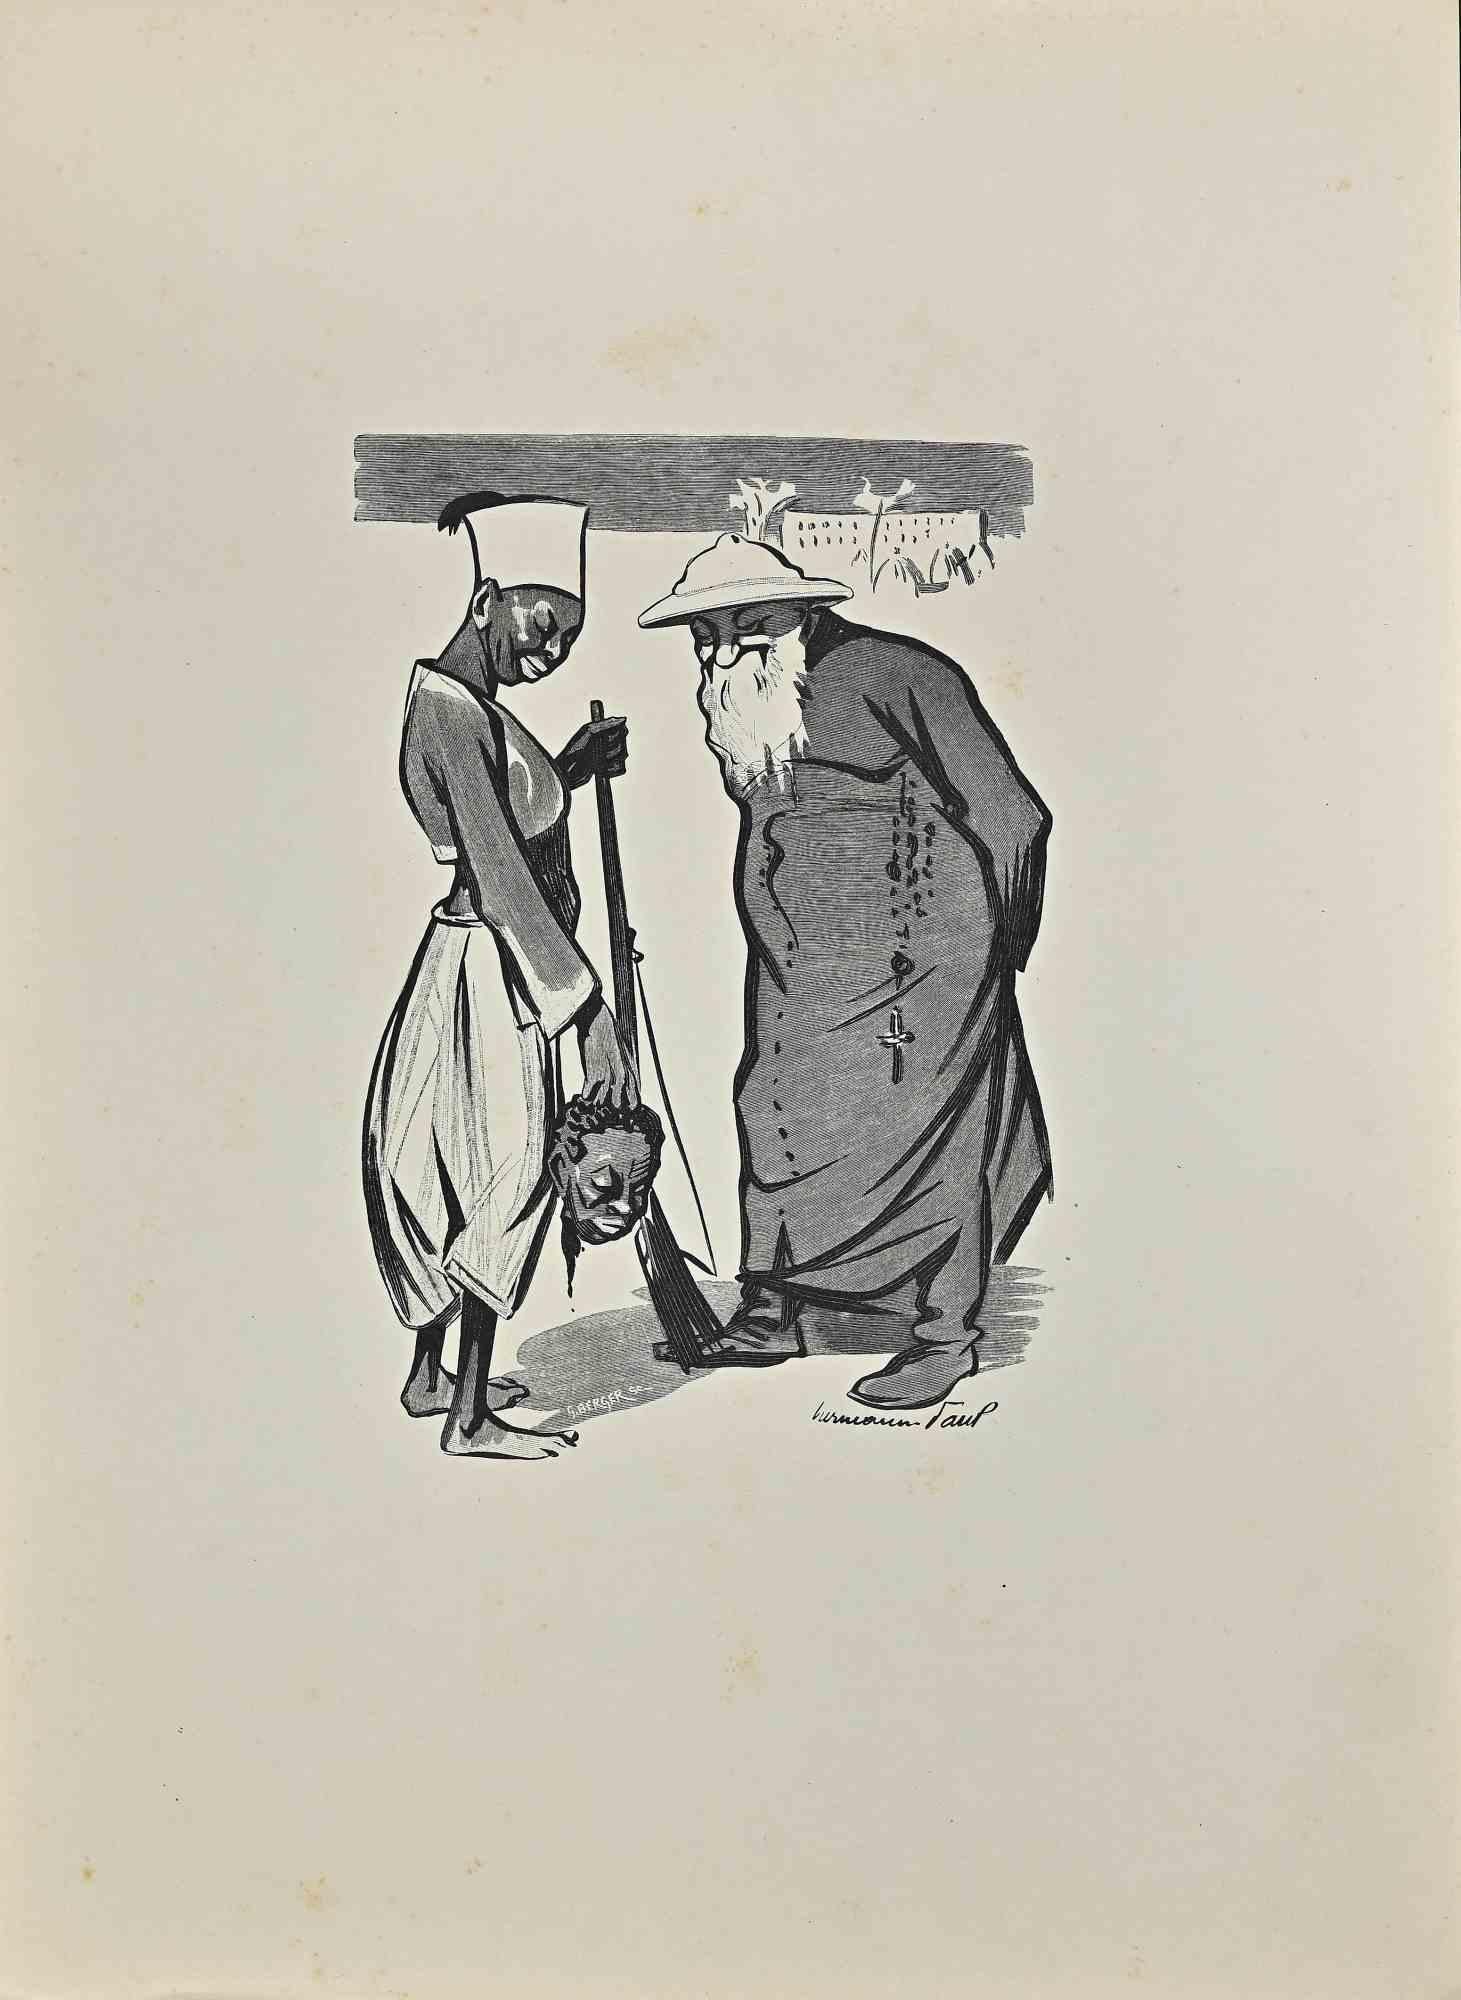 L'Inspecteur Général "Revizor" ist eine Lithographie von Hermann Paul aus dem Jahr 1903.

Signiert auf der Platte.

Guter Zustand.

René Georges Hermann-Paul (27. Dezember 1864 - 23. Juni 1940) war ein französischer Künstler. Er wurde in Paris